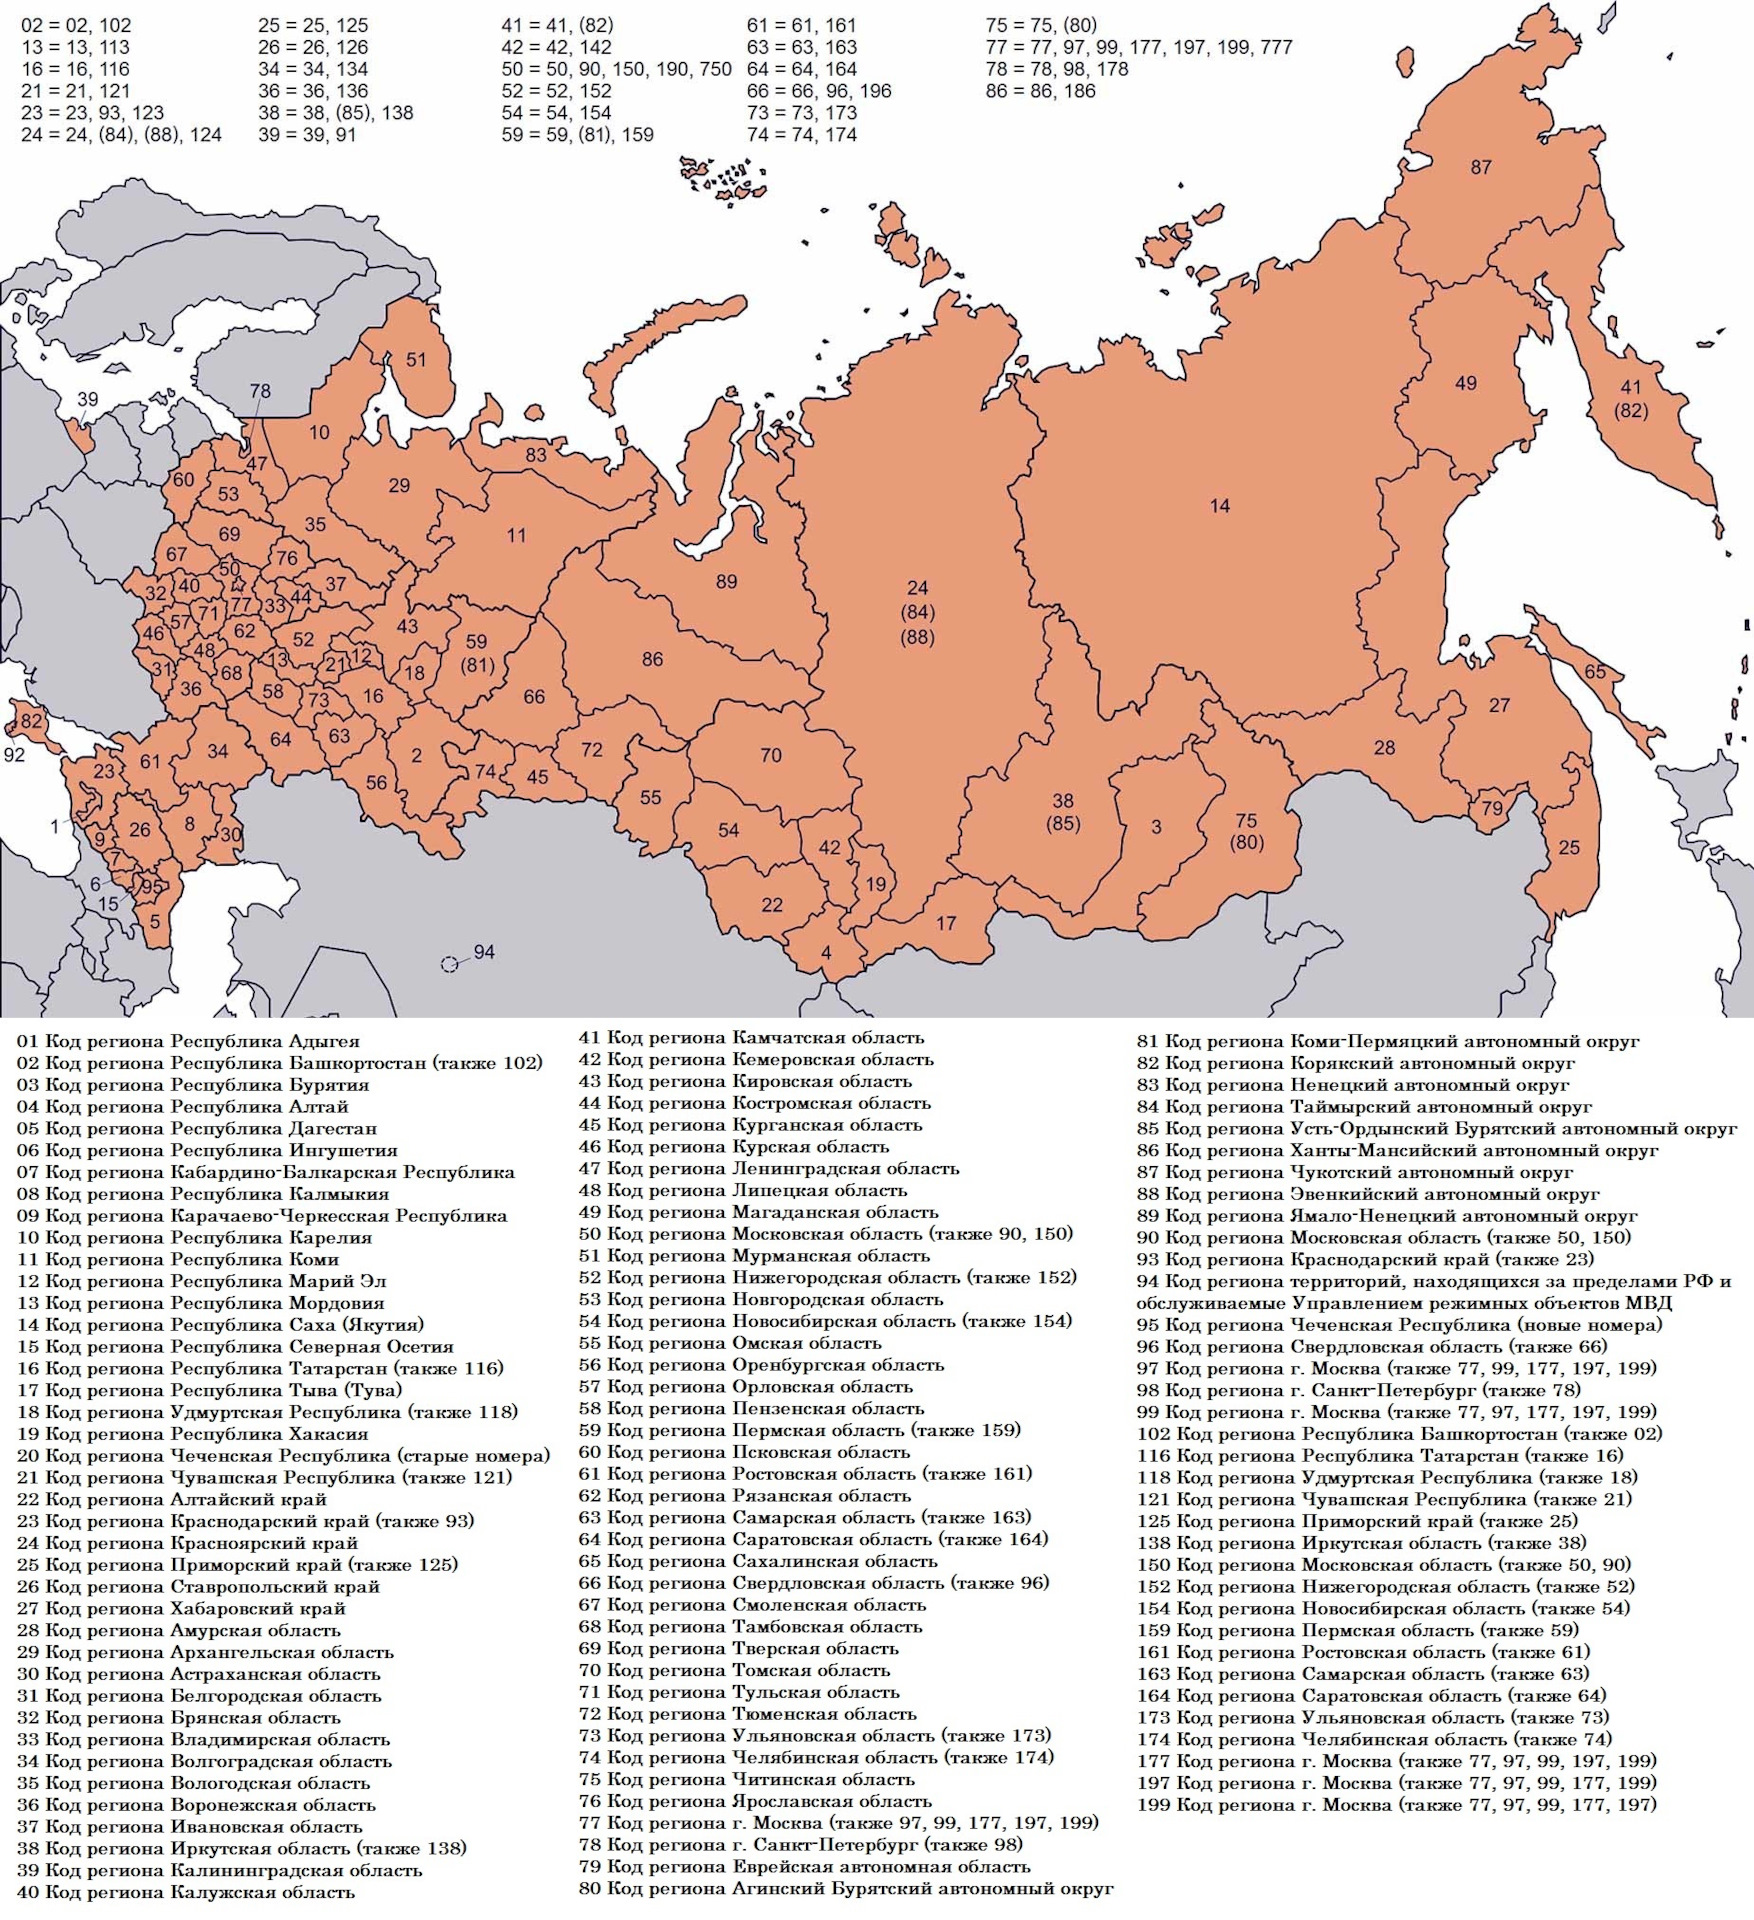 Национальный код россии